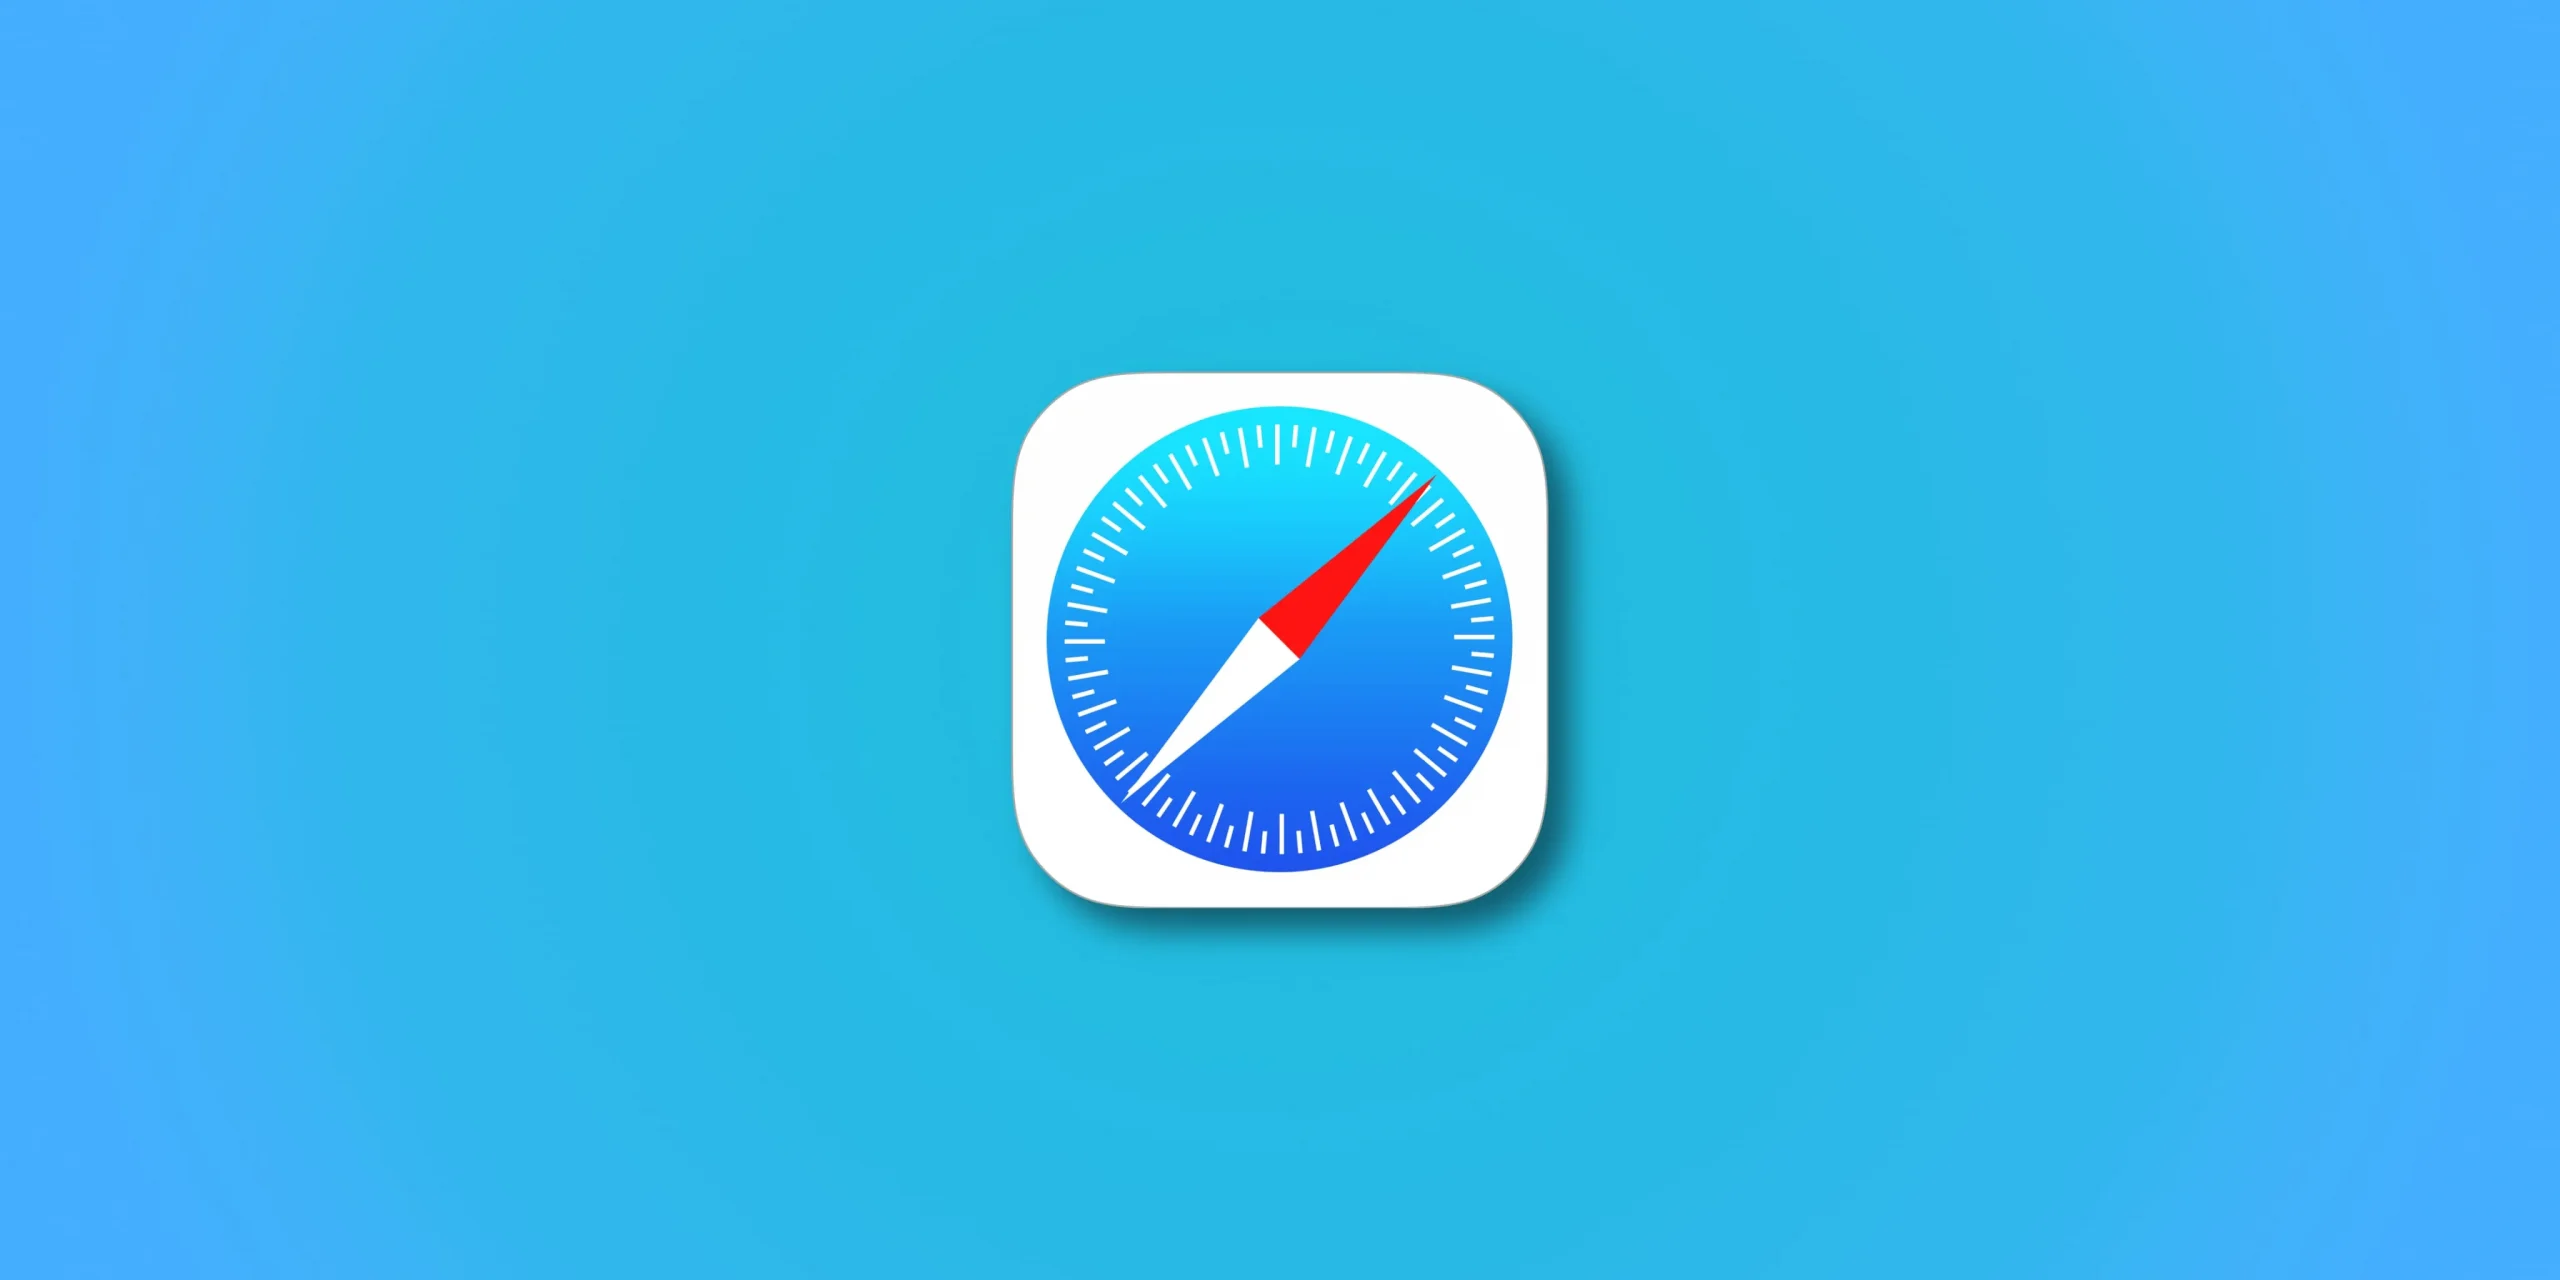 Illustration montrant un logo Apple Safari sur un fond dégradé bleu